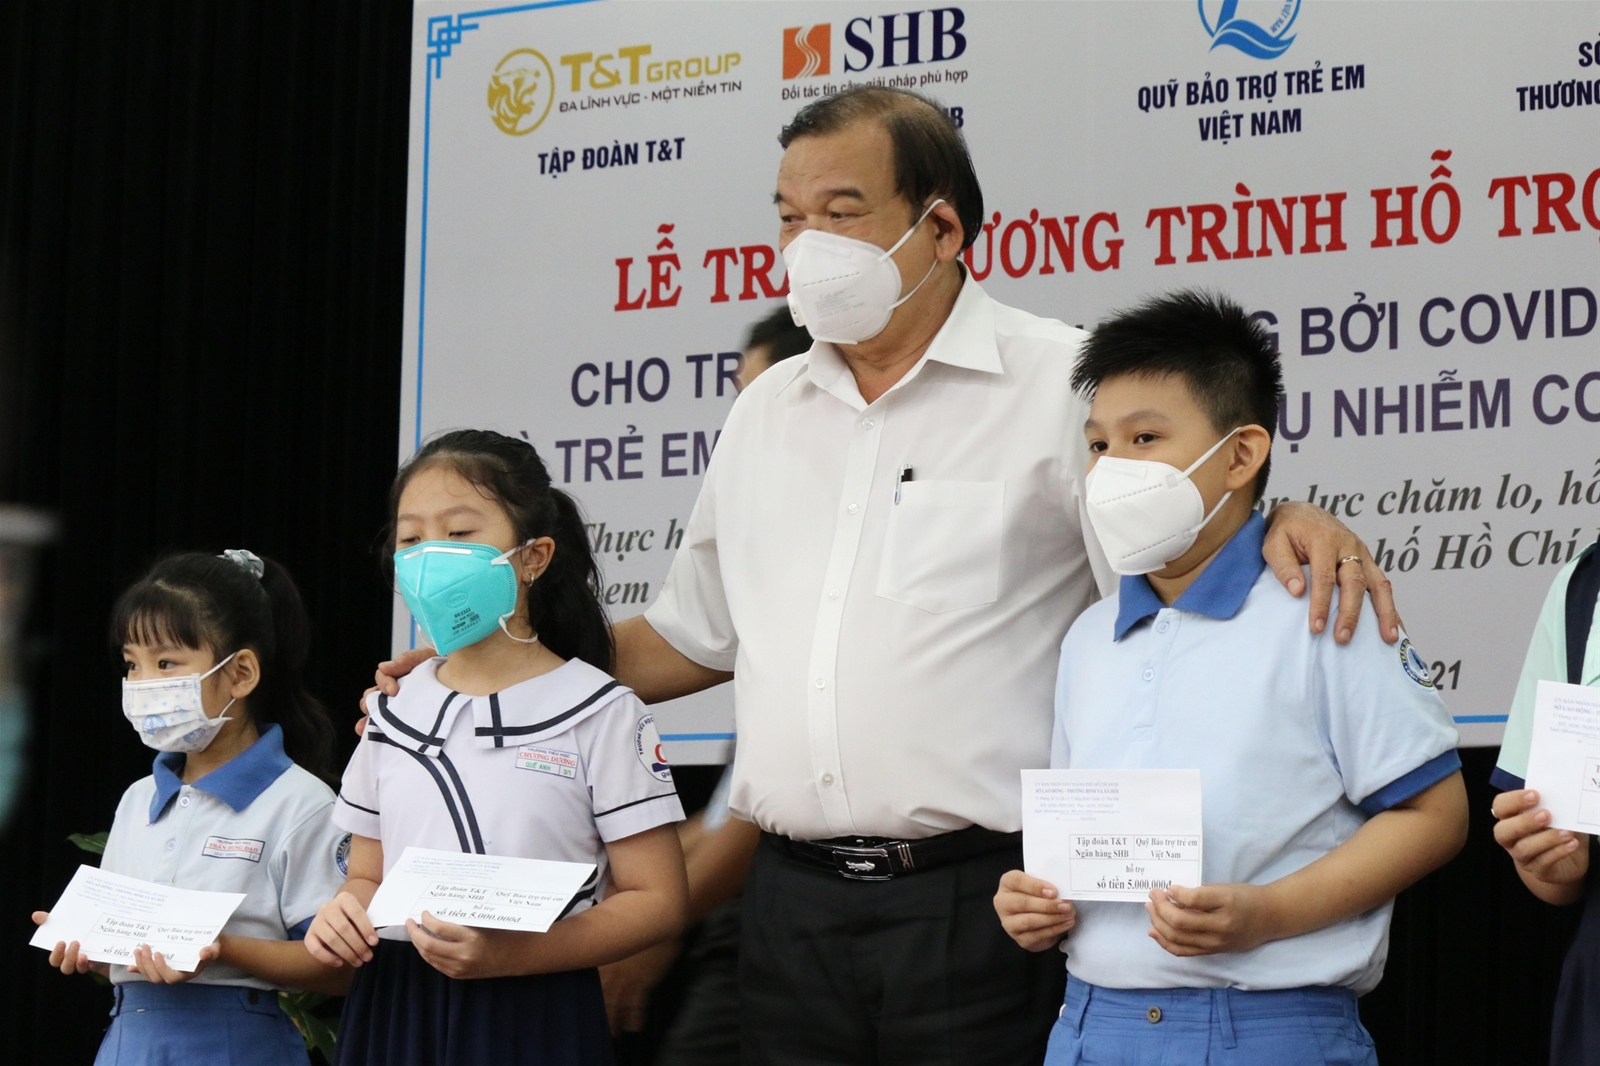 Sở LĐ-TB-XH TP.HCM tổ chức chương trình hỗ trợ trẻ em bị ảnh hưởng bởi Covid-19